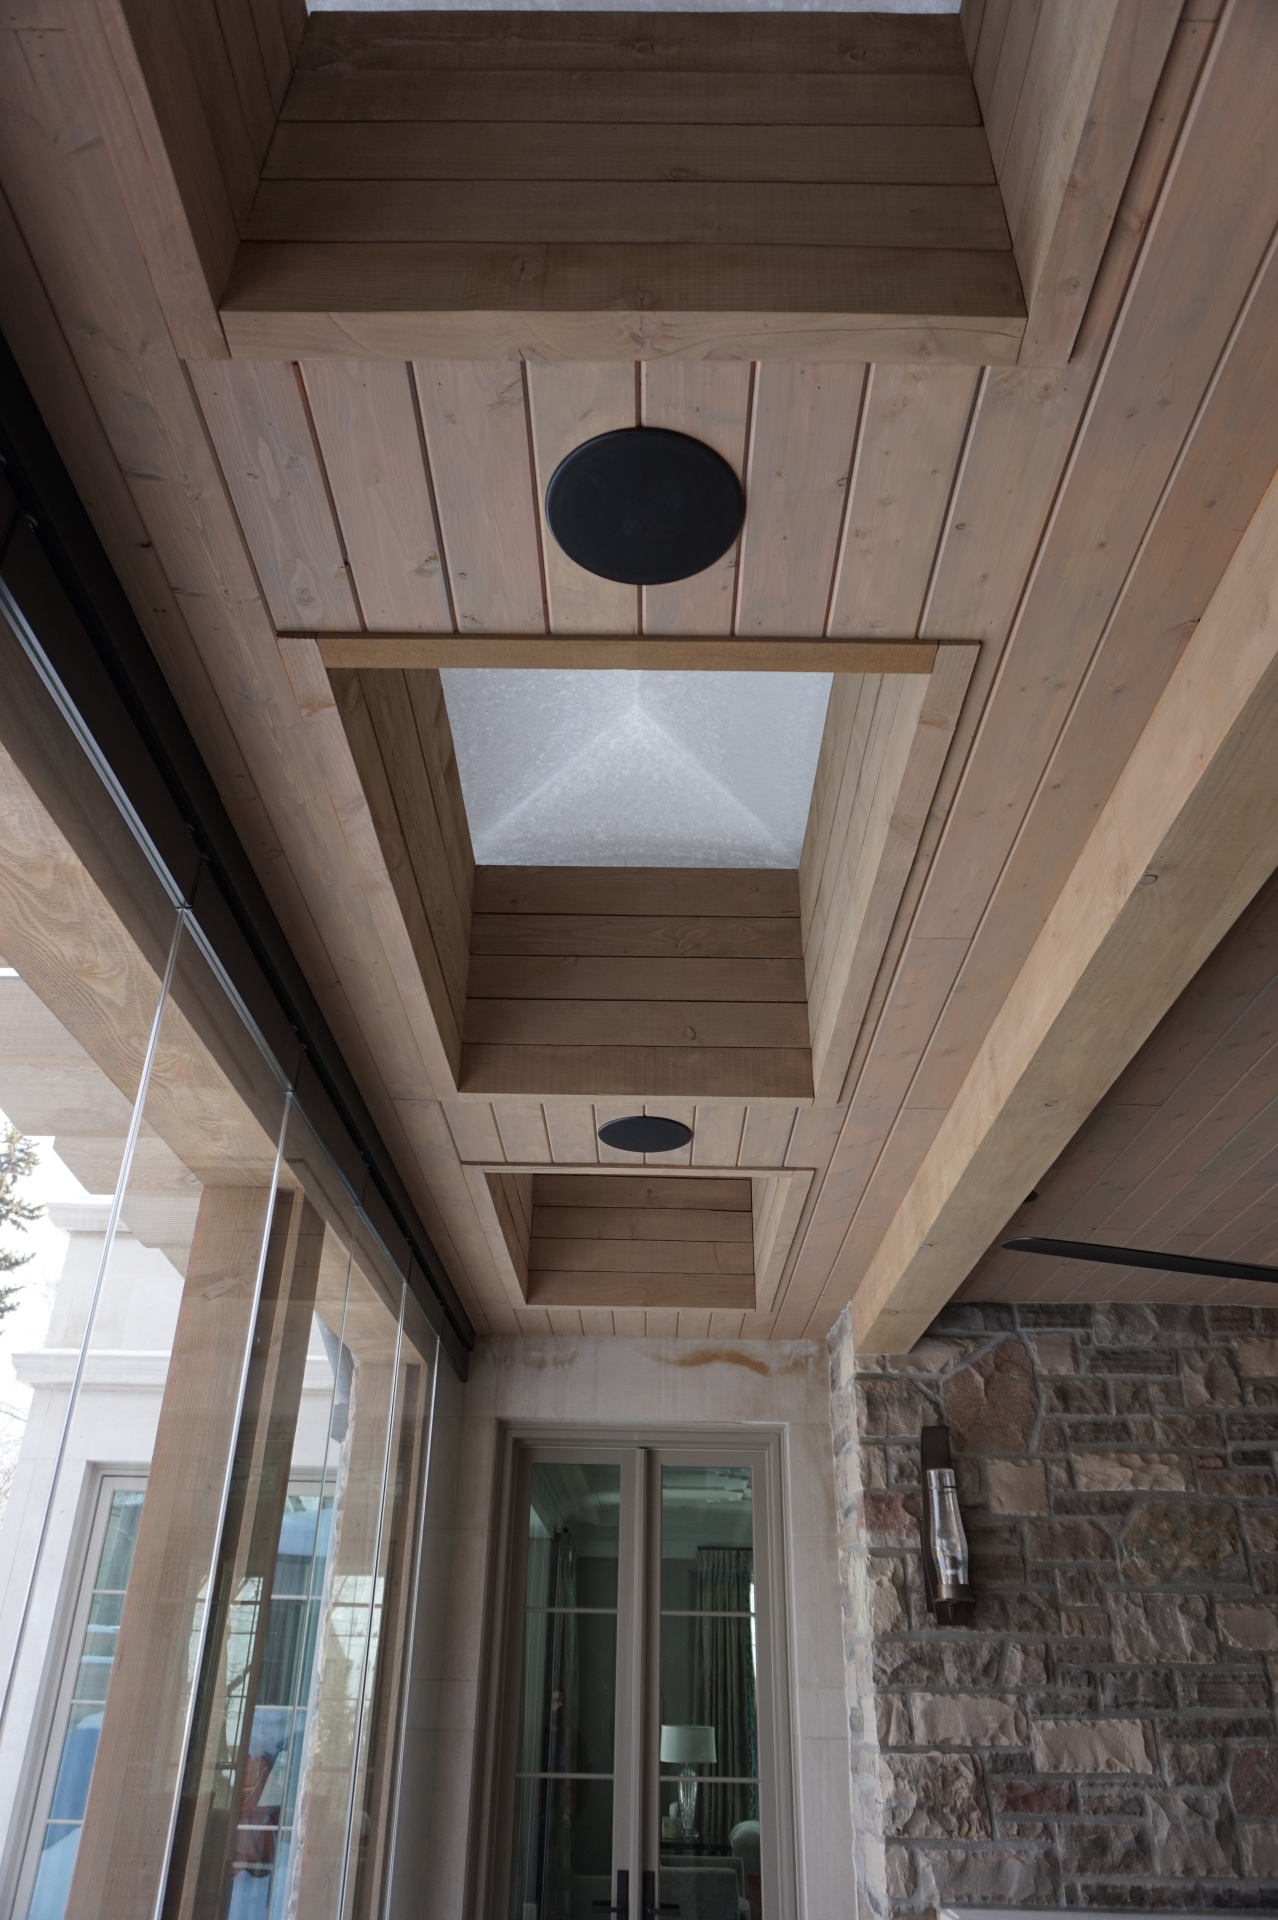 Douglas fir, T&G, paneled ceiling porch, ceiling, T&G ceiling, paneled ceiling,column, porch, exterior carpentry, exterior trim, royal exterior fine carpentry, toronto